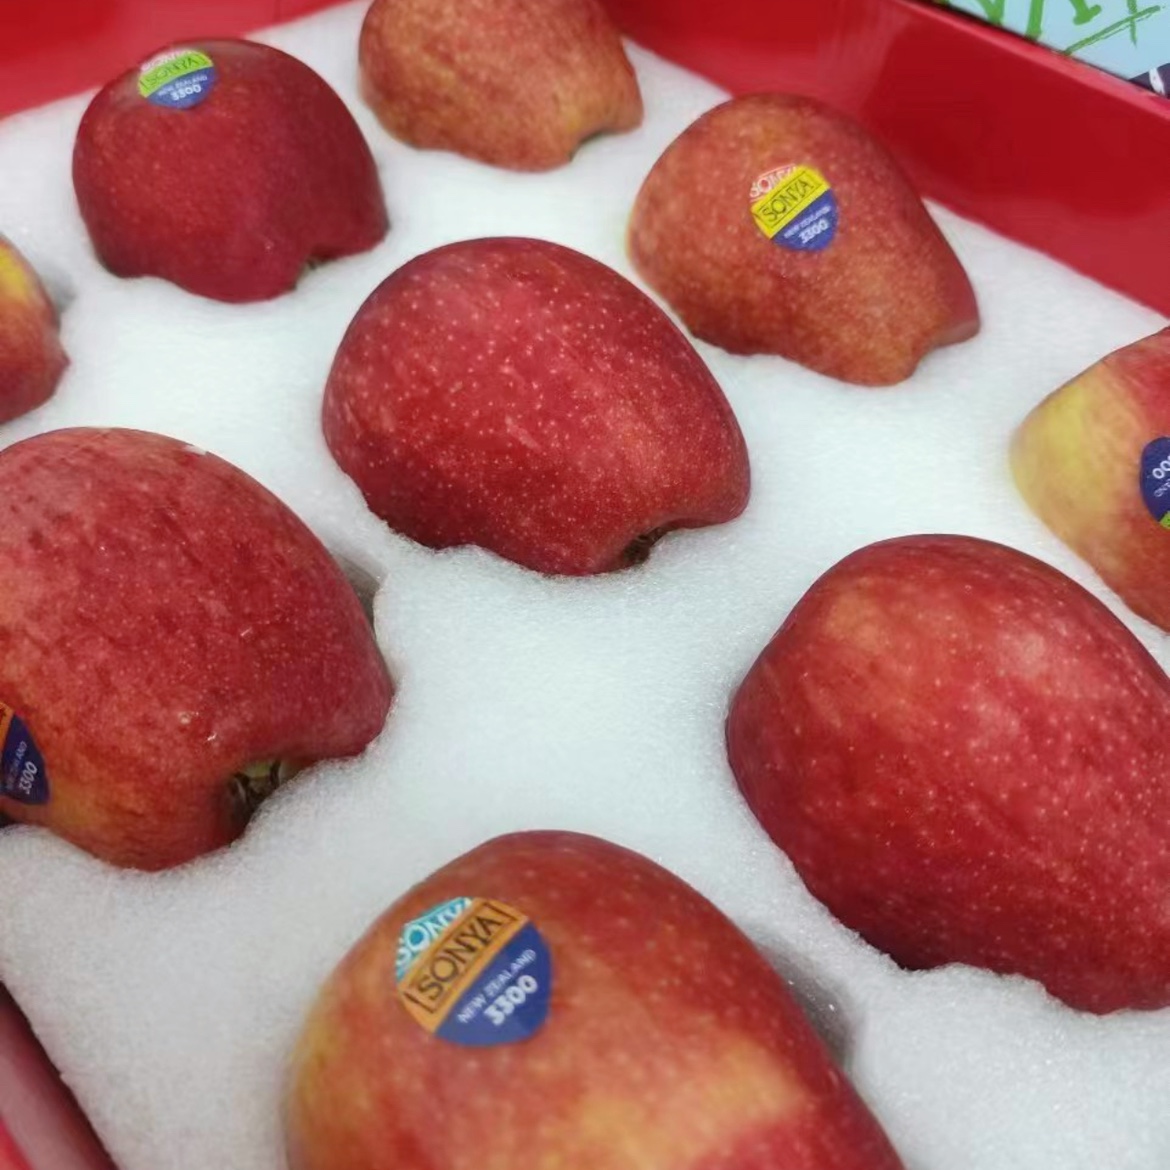 新西兰索尼娅苹果 当季新鲜进口水果高端苹果送礼盒装顺丰空运